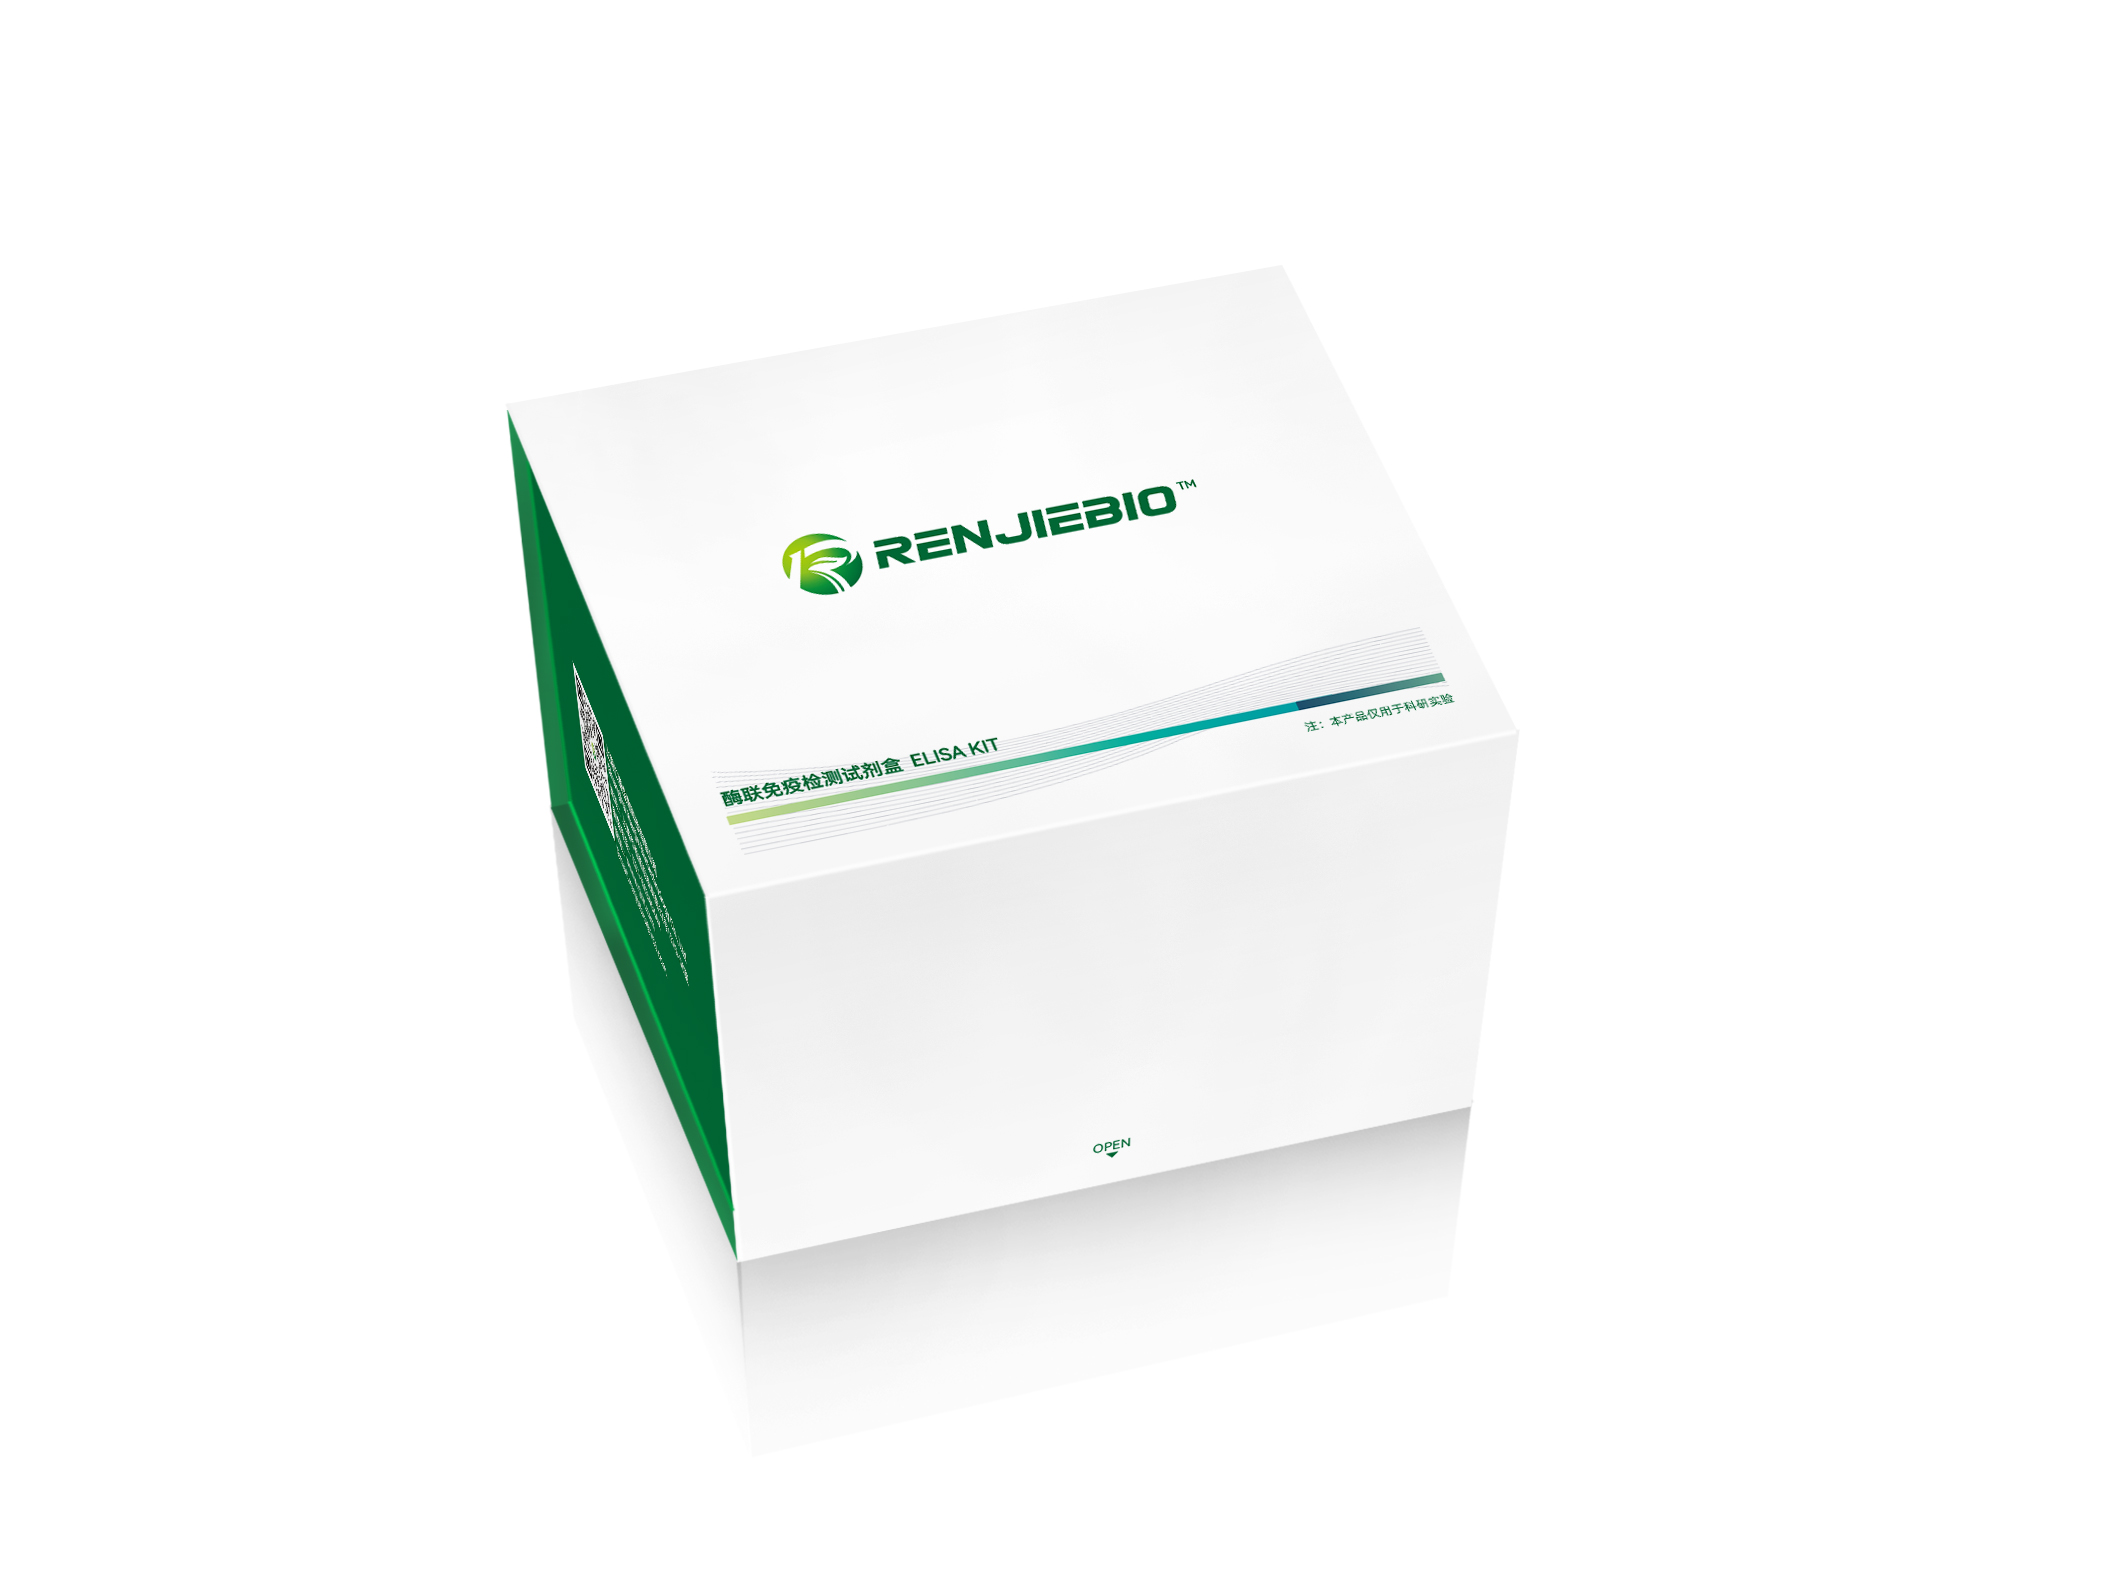  植物茉莉酸异亮氨酸（JA-Ile）ELISA试剂盒